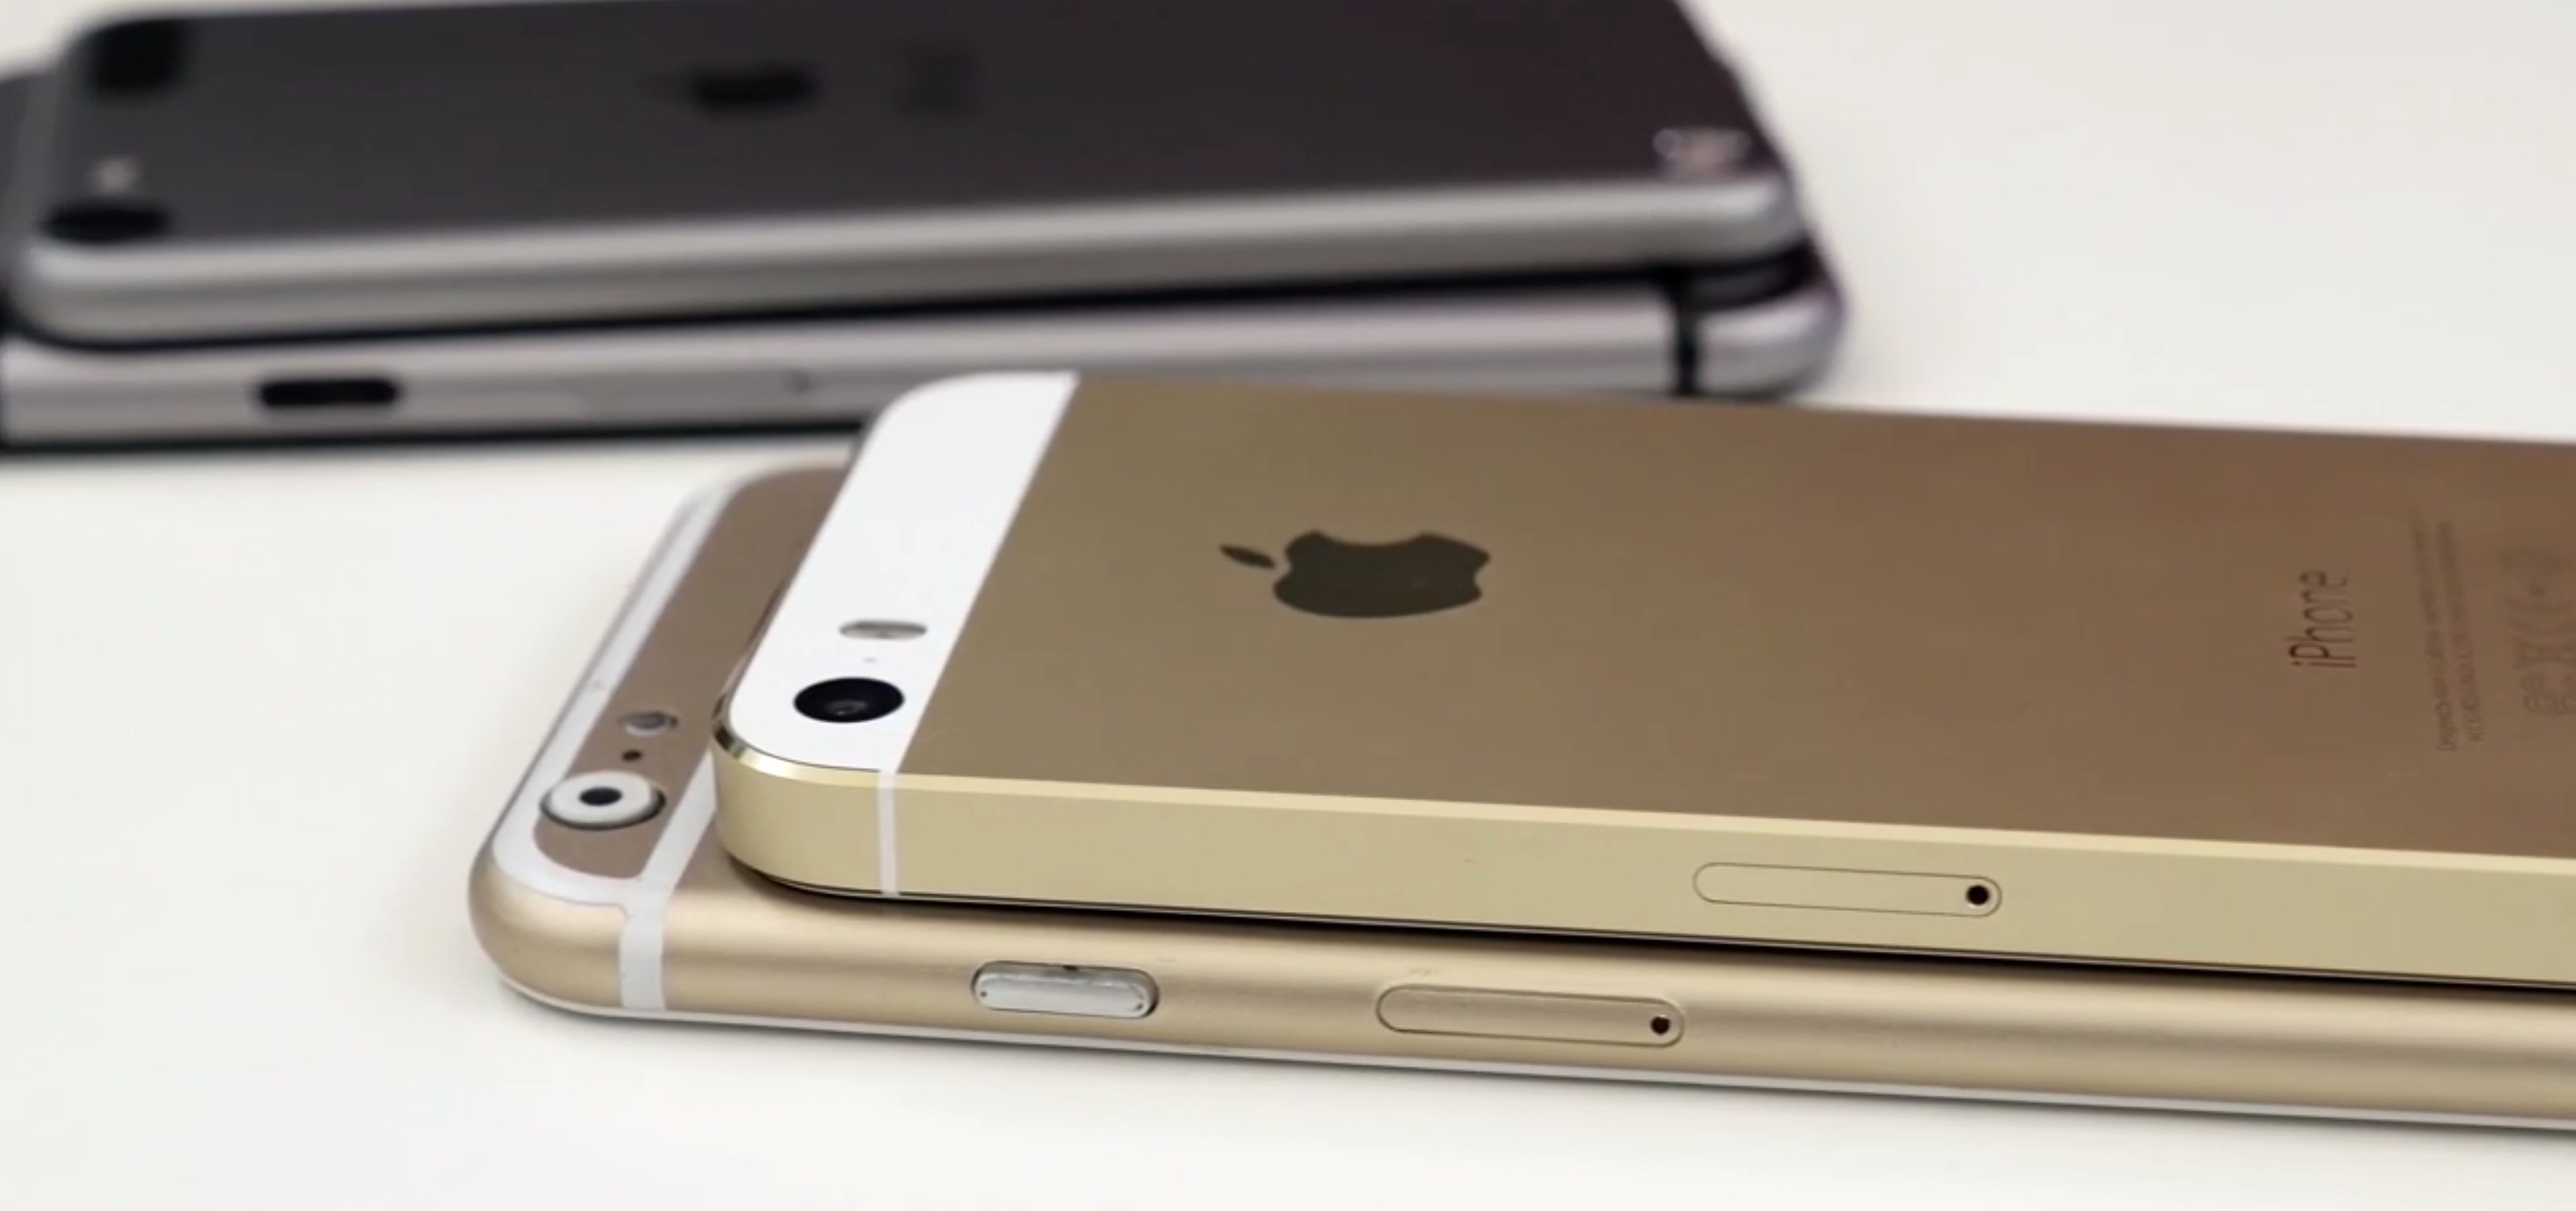 Foxconn startet iPhone 6 Produktion im Juli 6